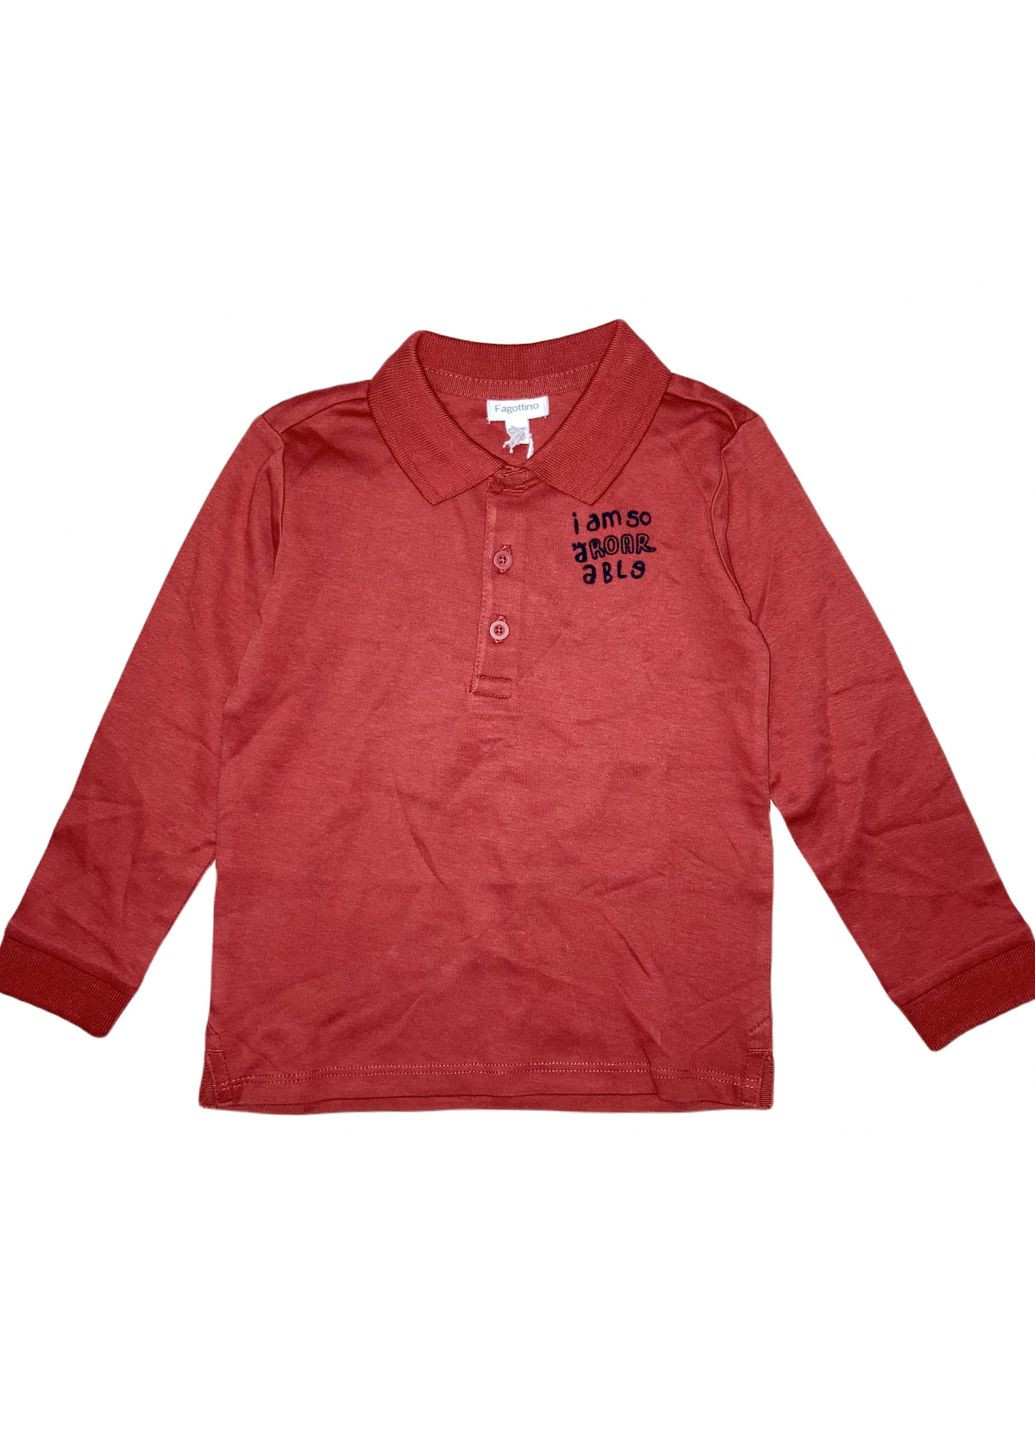 Бордовая детская футболка-футболка поло с длинными рукавами хлопковый трикотажный для мальчика 635932 для мальчика Fagottino с надписью